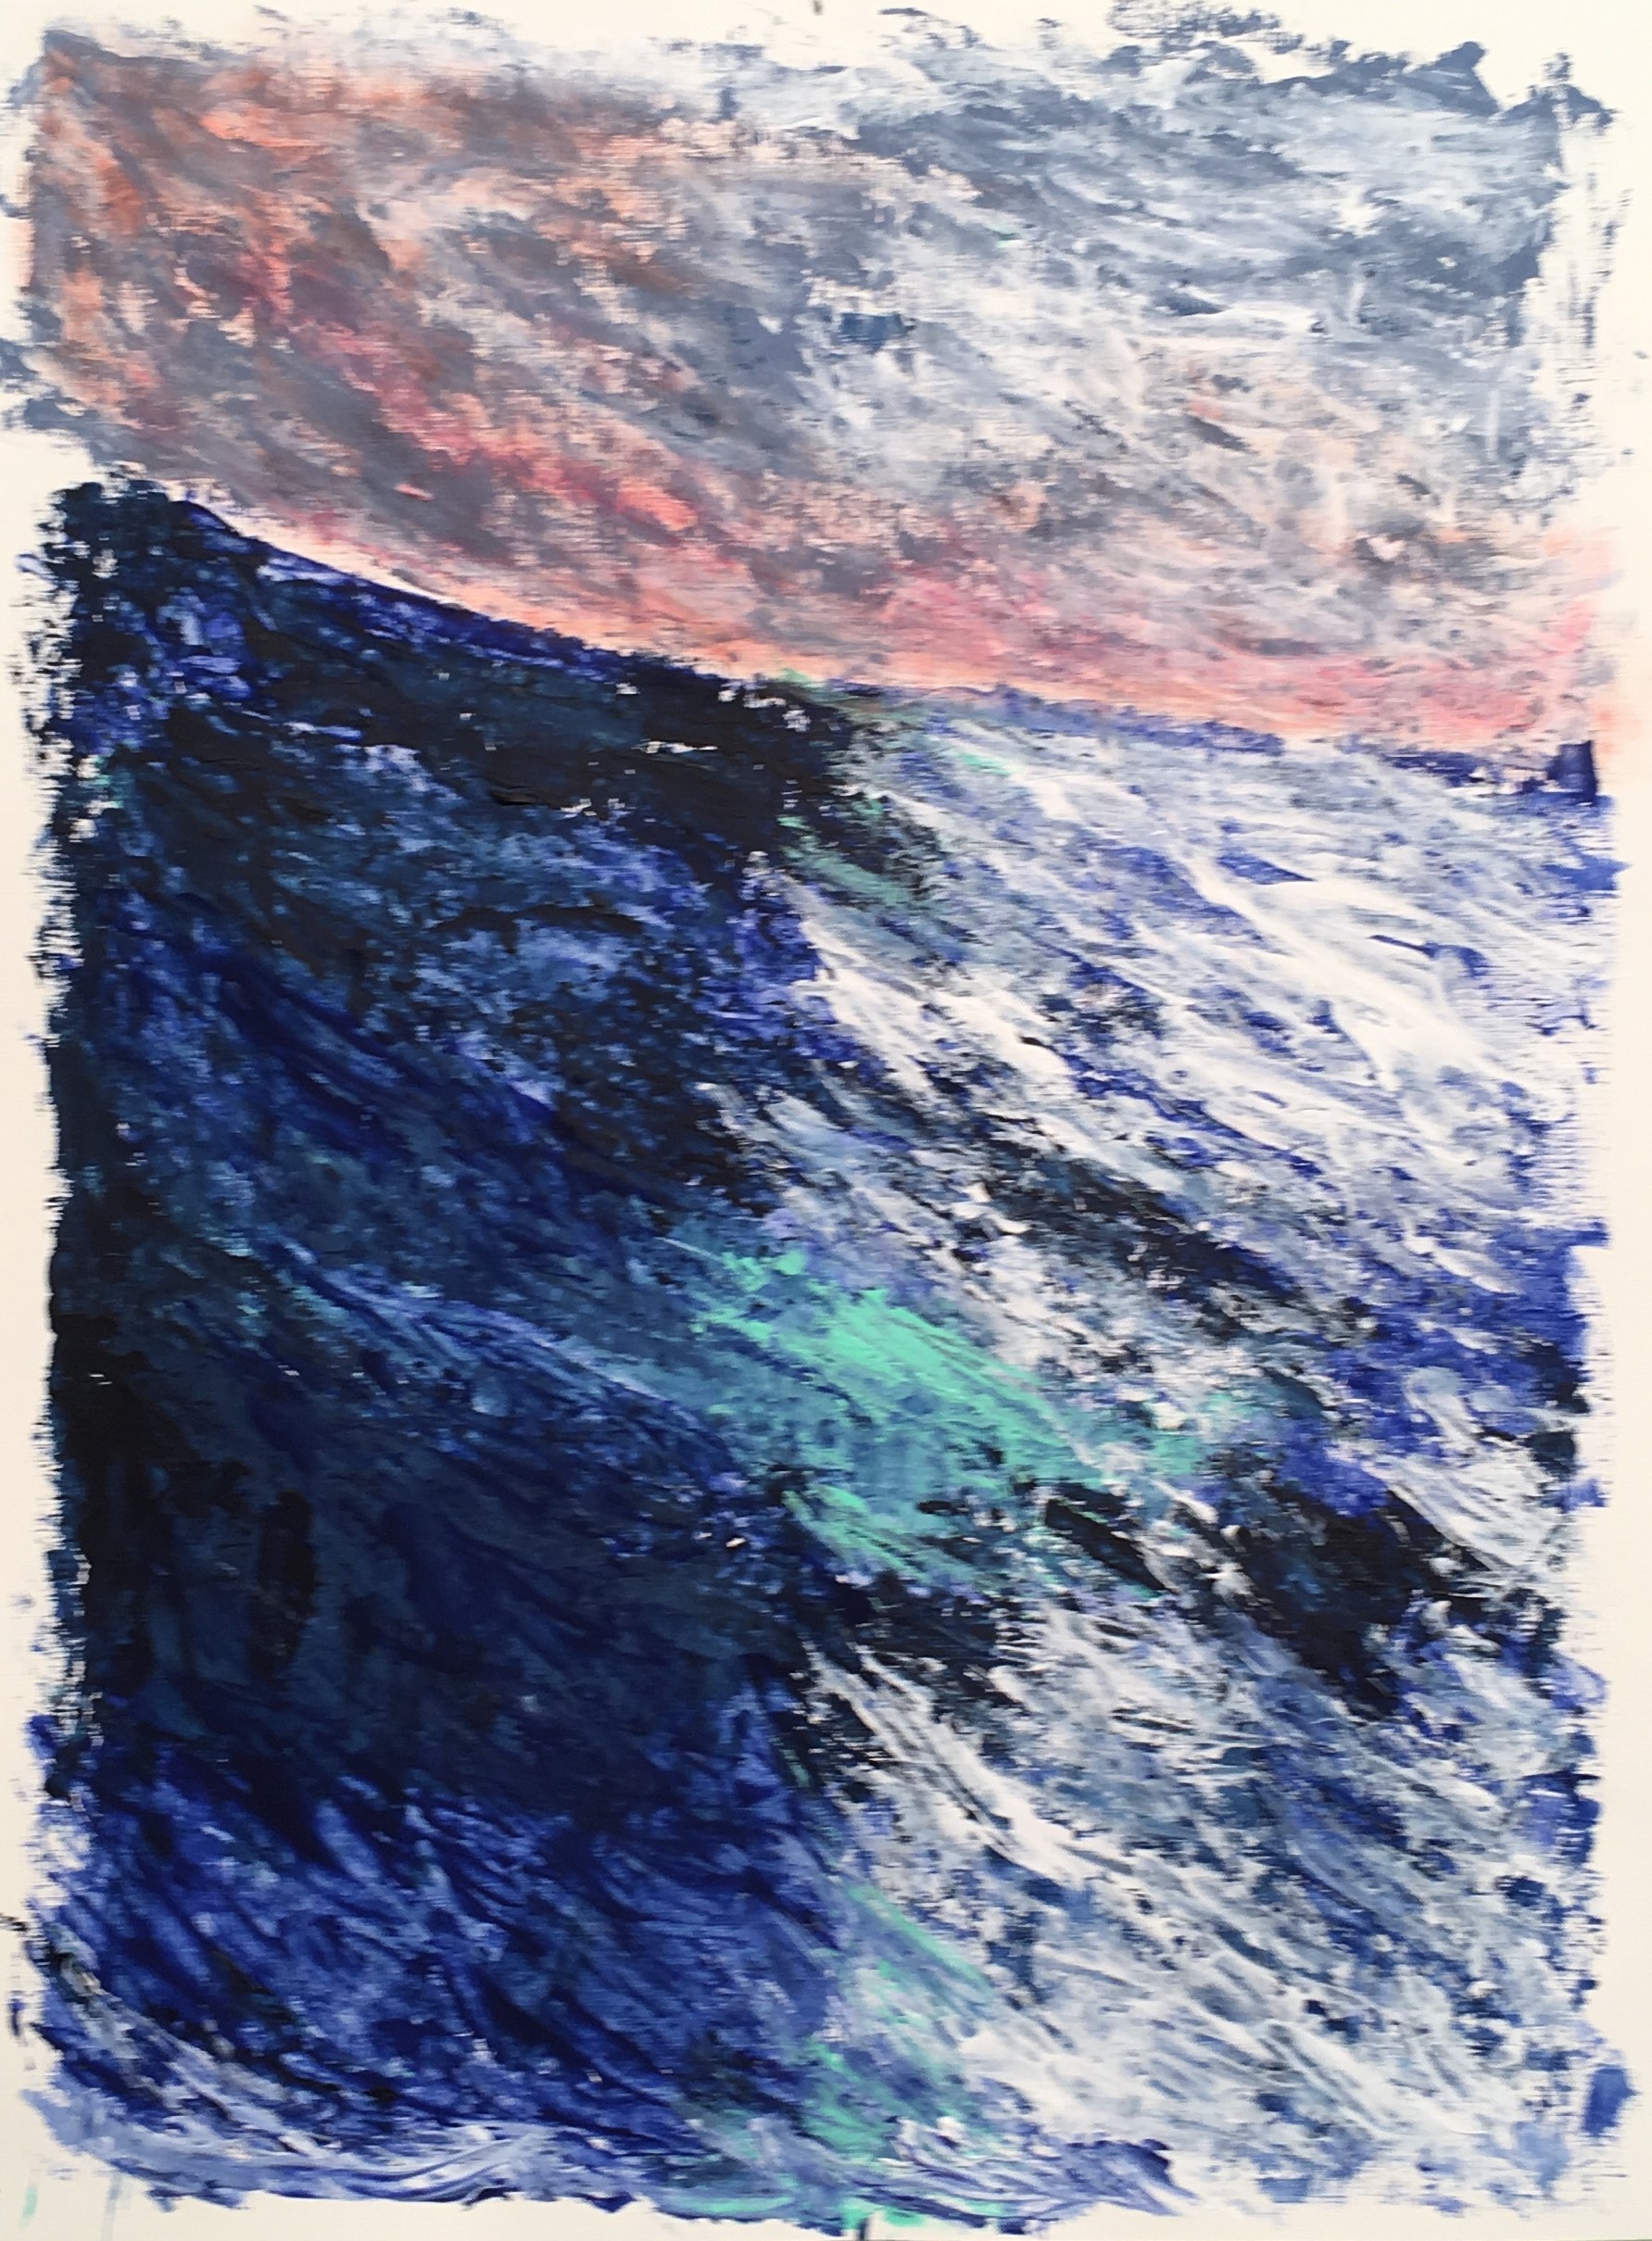 N° 6046 - Vague marine - Acrylique et pigments sur papier - 65 x 50 cm - 9 décembre 2019